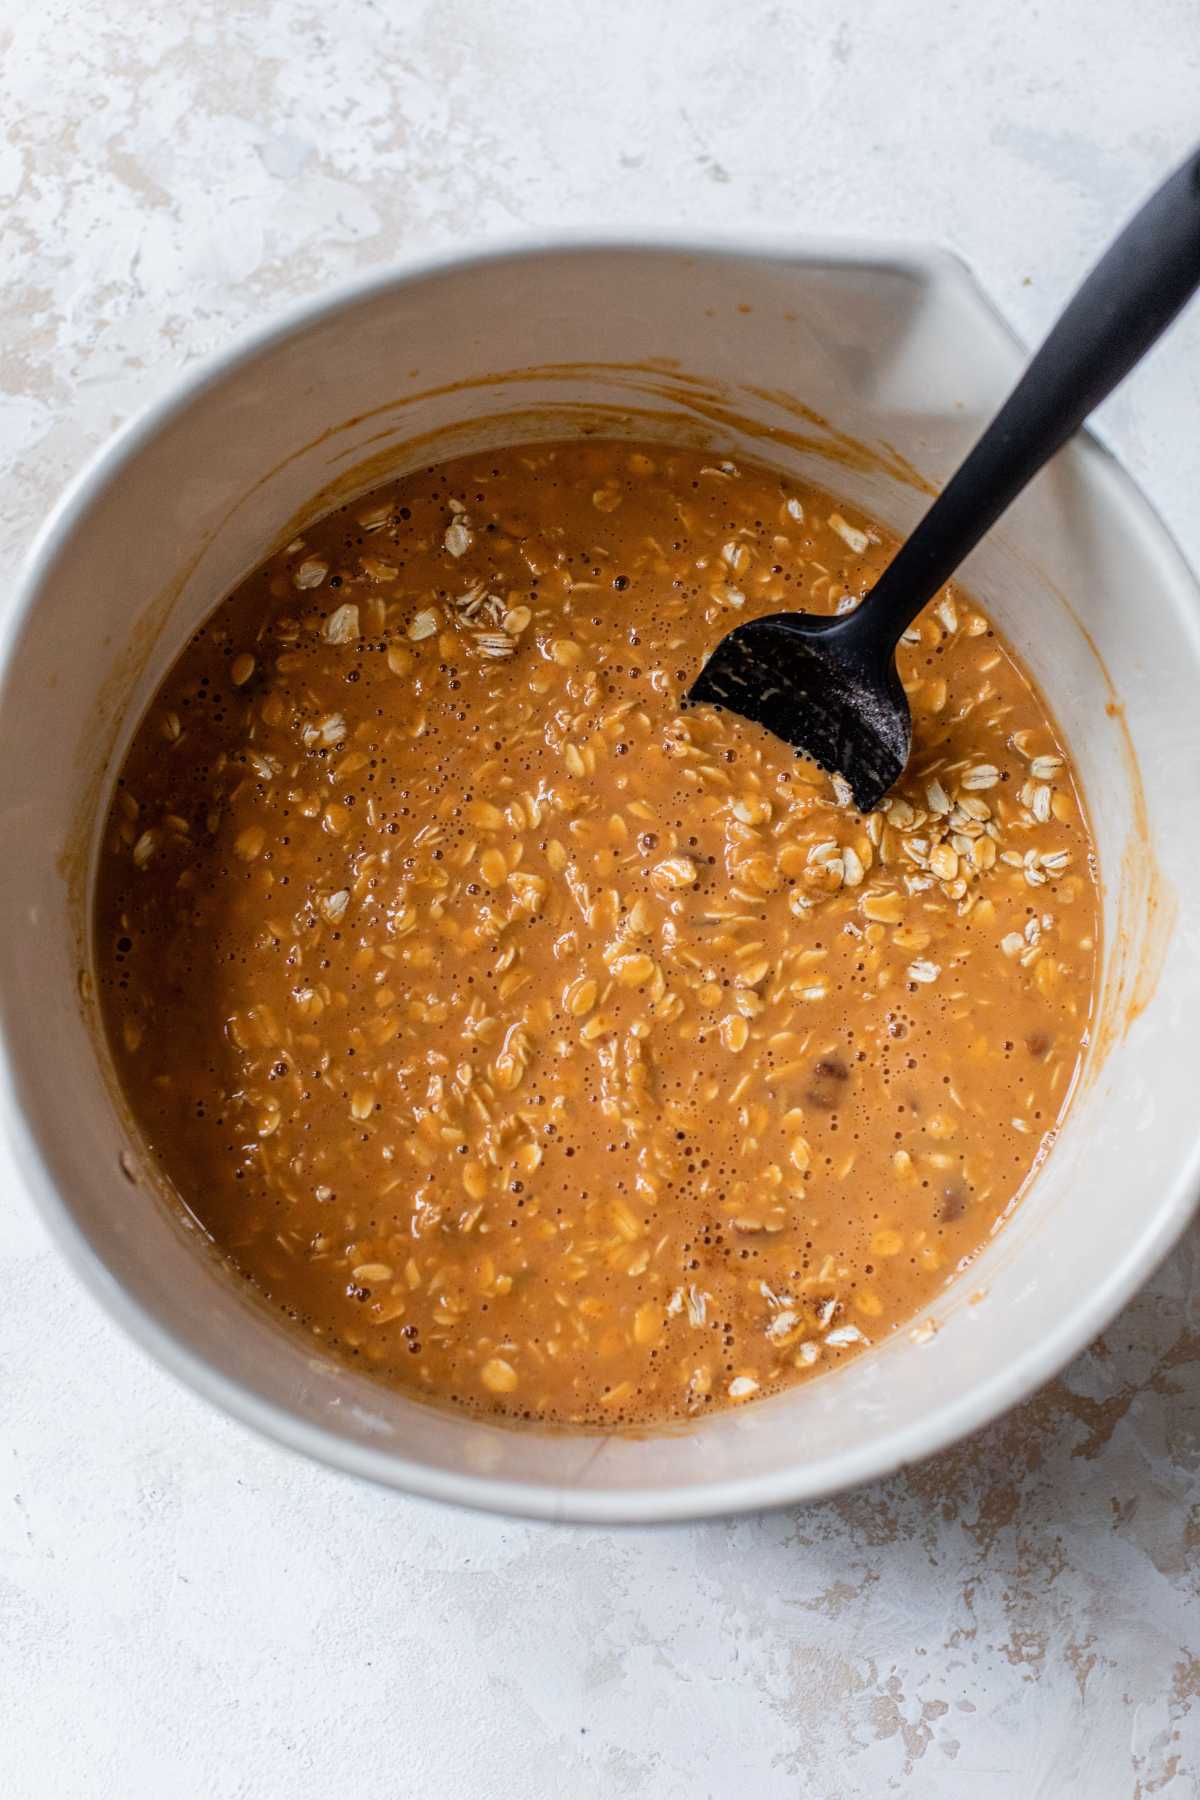 Stir oat mixture with pumpkin mixture.